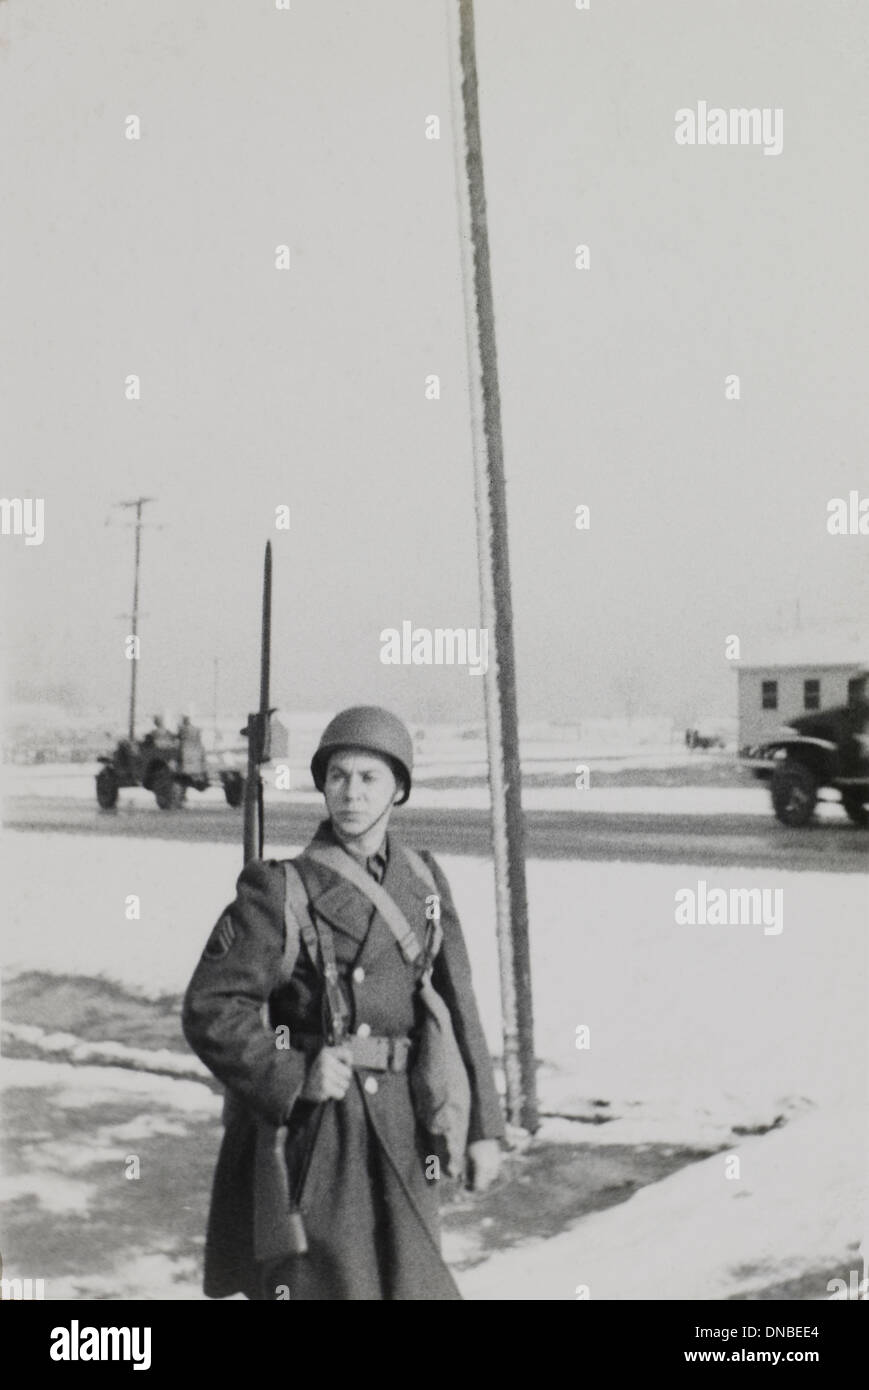 Soldato in uniforme con un fucile, ritratto, durante la seconda guerra mondiale, HQ 2° Battaglione, 389a di fanteria, US Army base militare, Indiana, USA, 1942 Foto Stock